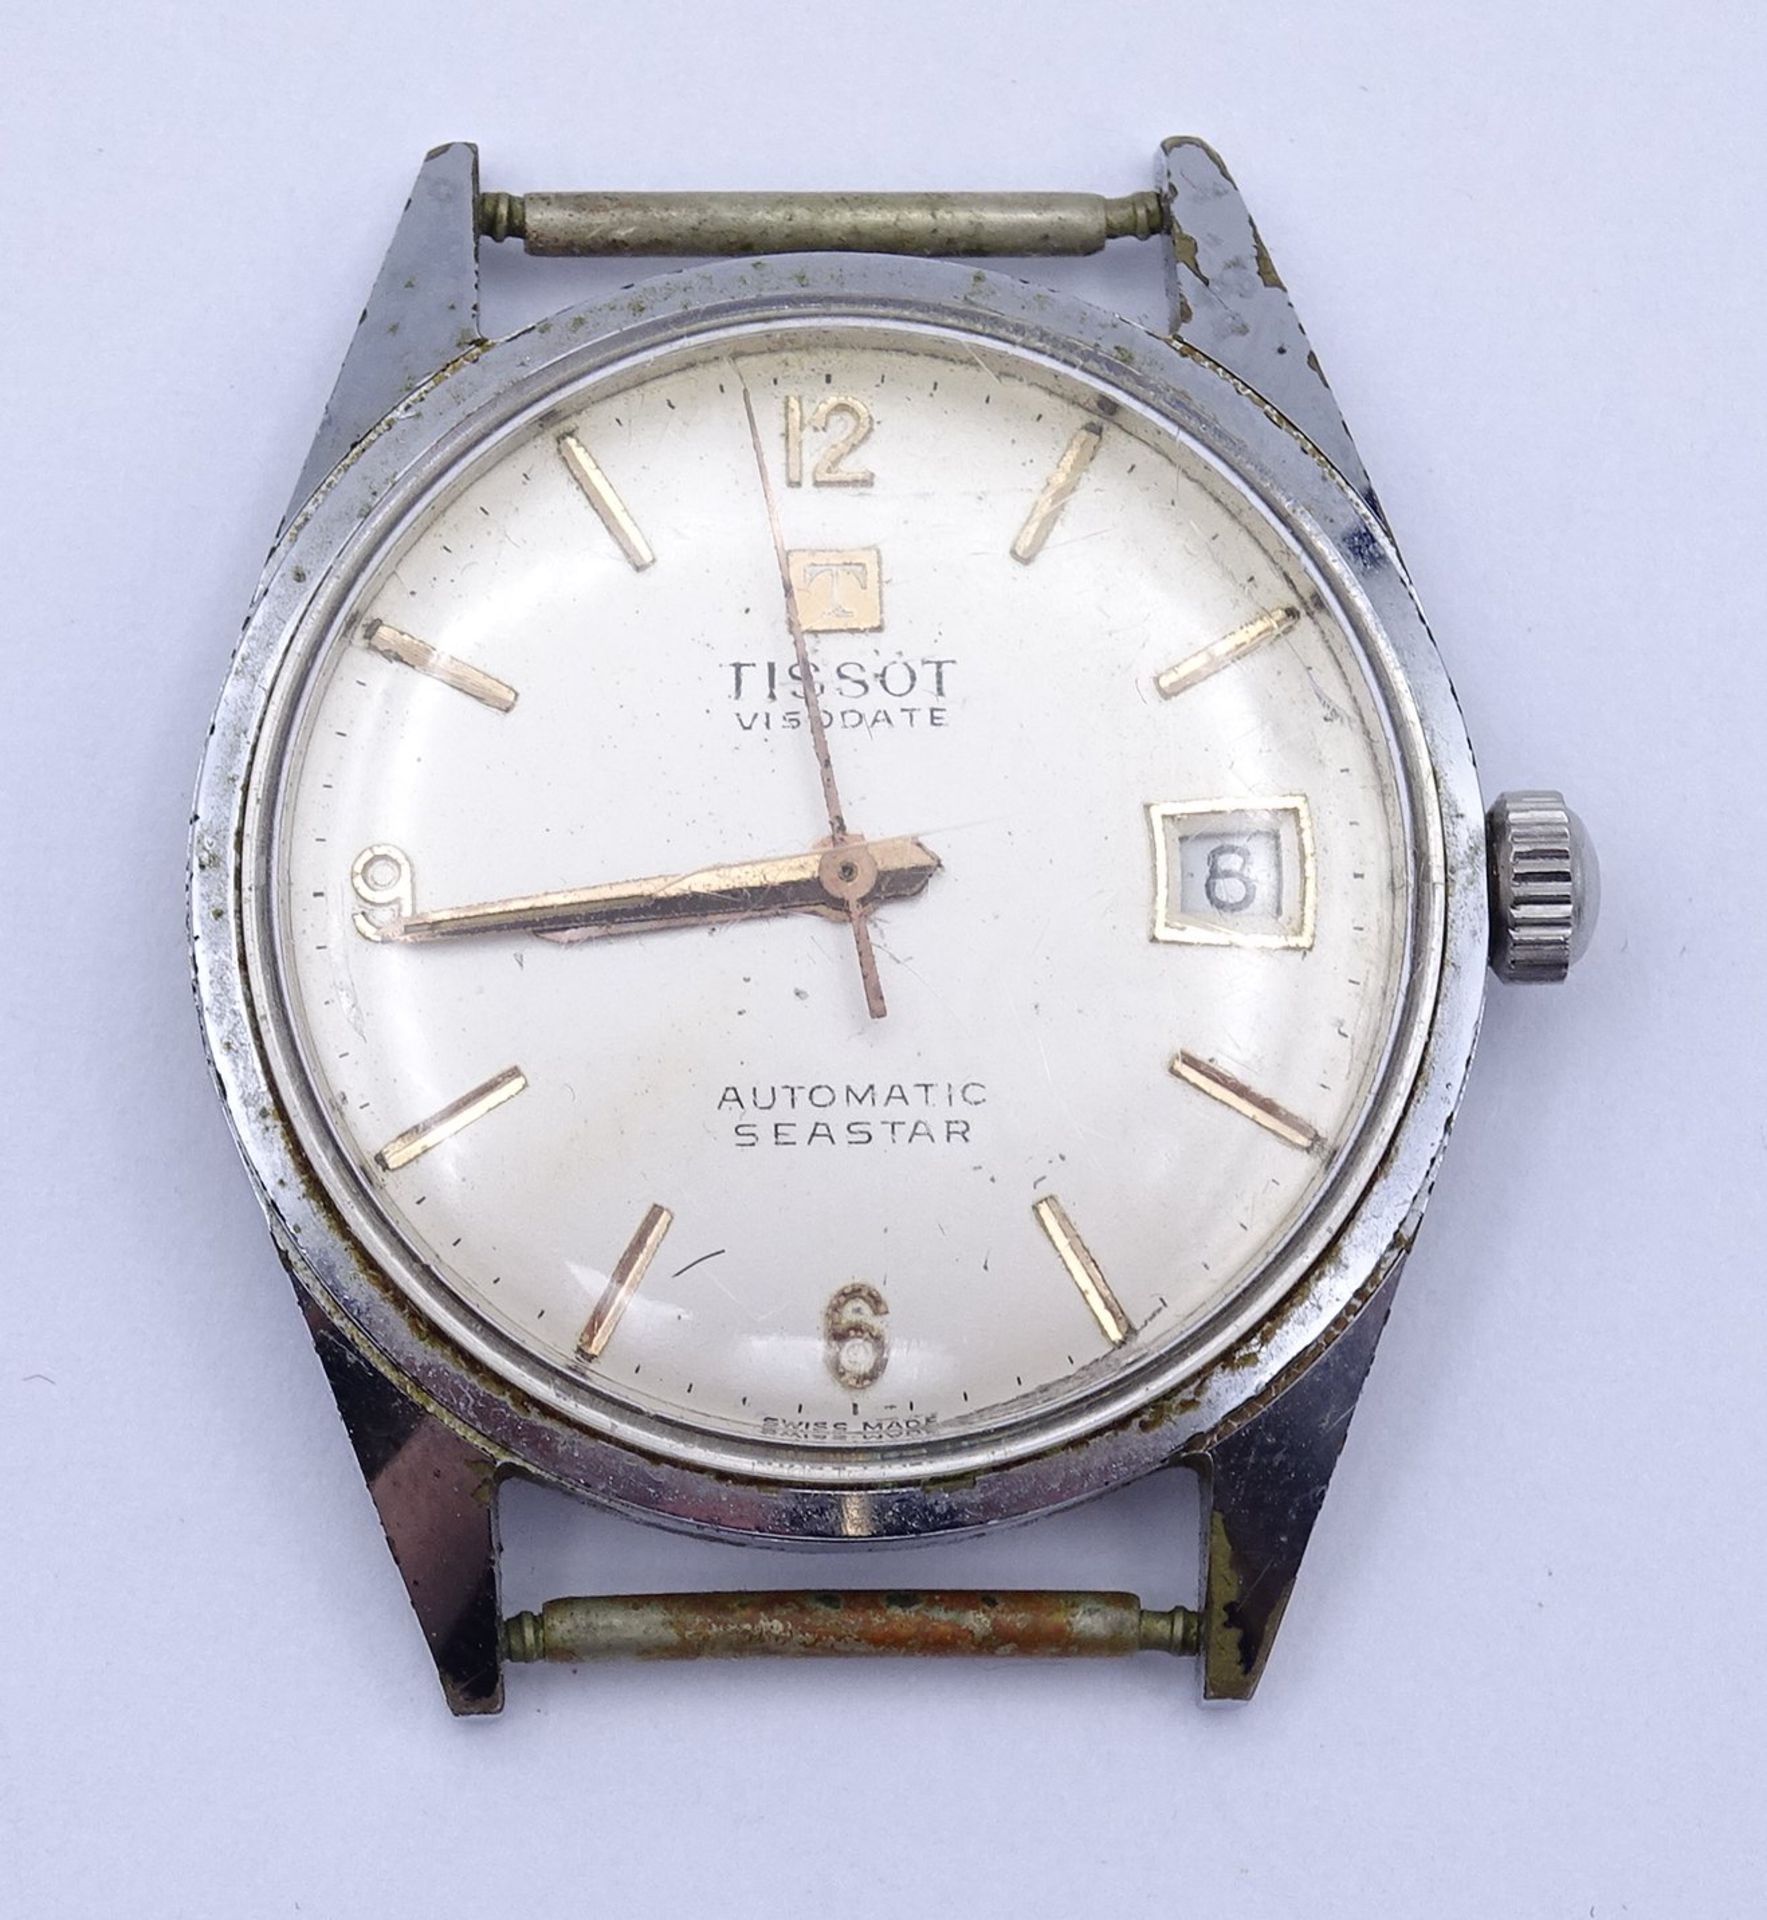 Armbanduhr Tissot Visodate Seastar ,Automatic, Werk läuft, D. 33,5mm, Alters- und Gebrauchsspuren - Bild 3 aus 5